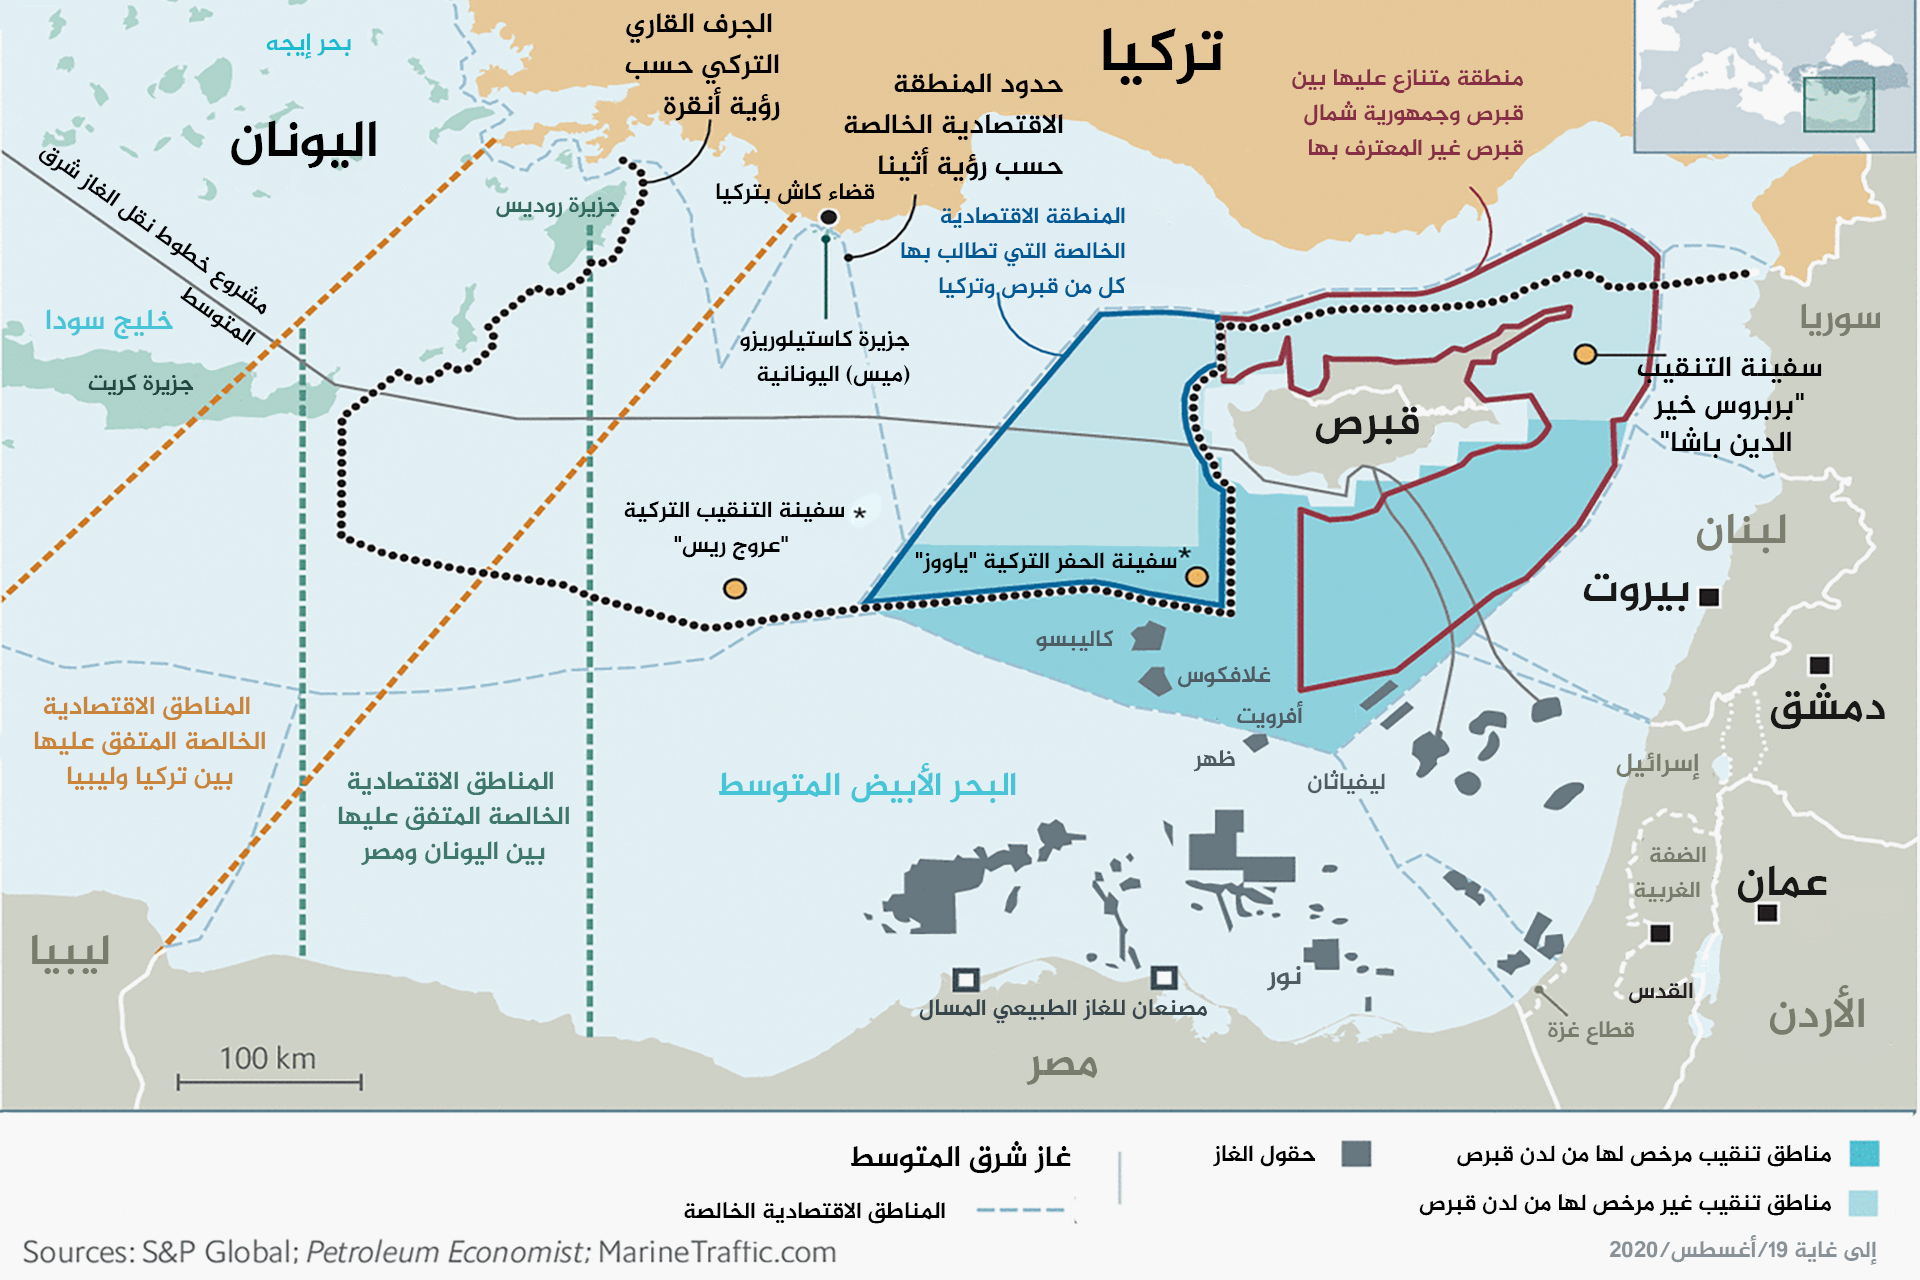 توتر شرق المتوسط.. خريطة تعقيدات وتداخلات الحدود البحرية لدول المنطقة